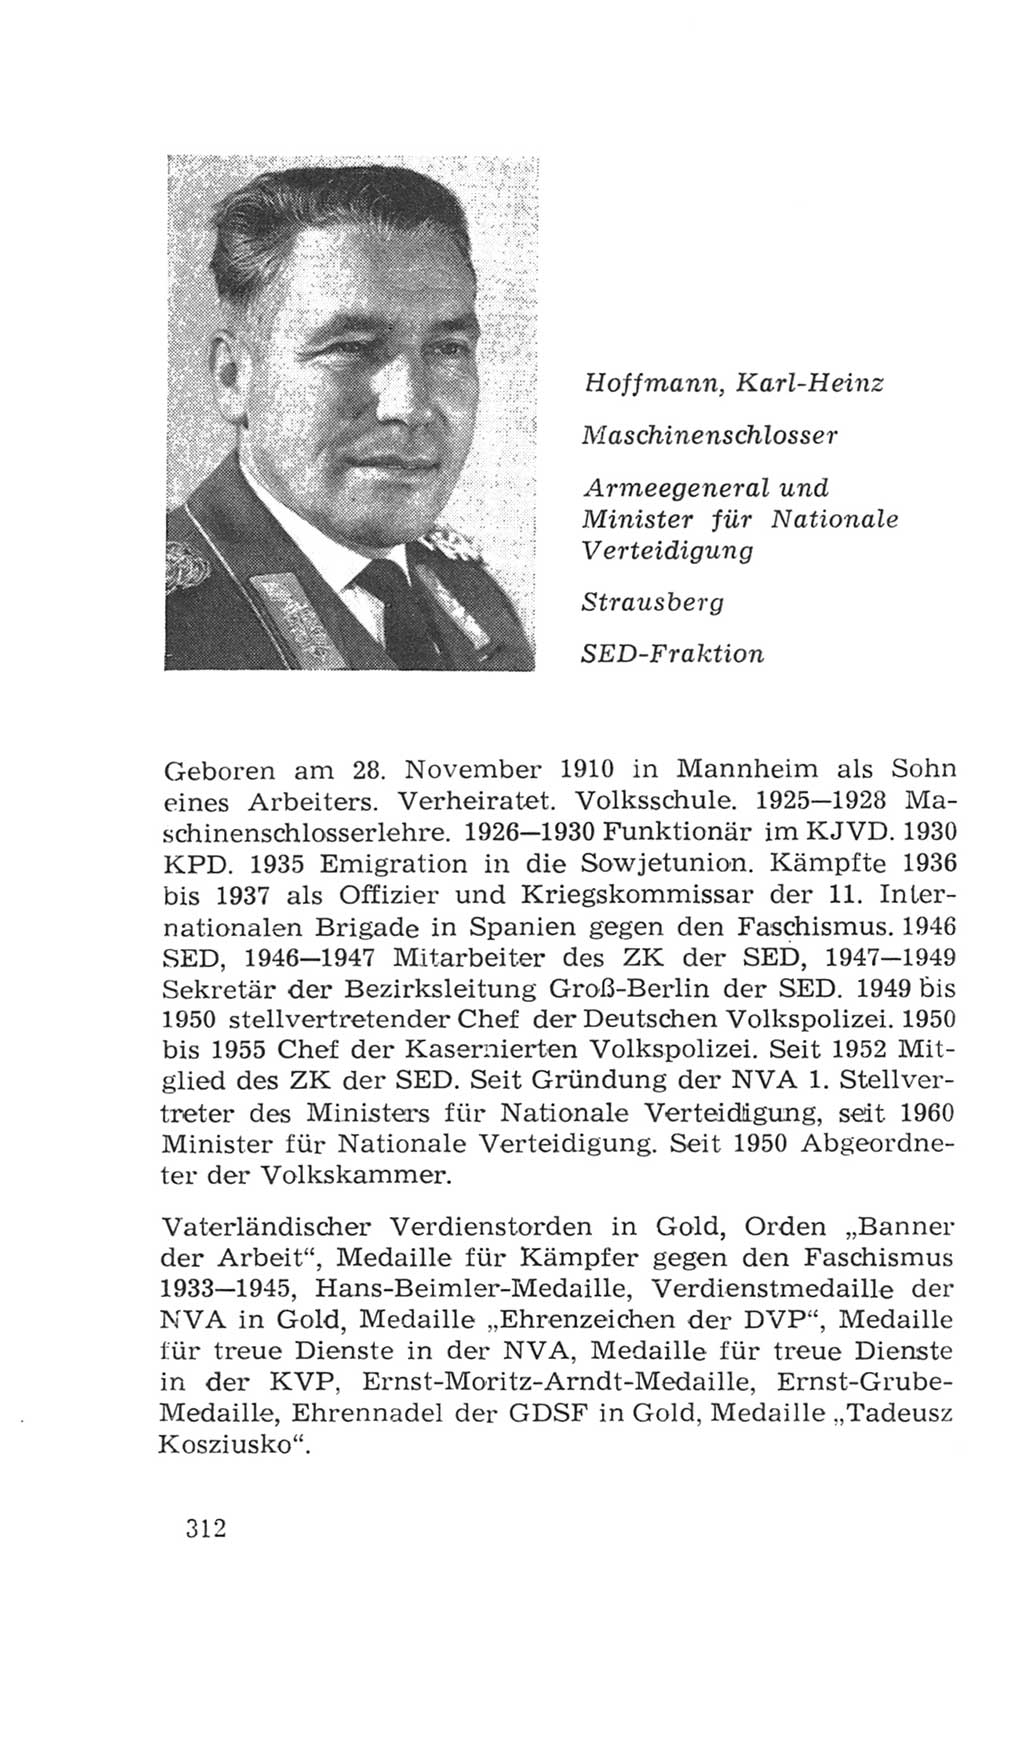 Volkskammer (VK) der Deutschen Demokratischen Republik (DDR), 4. Wahlperiode 1963-1967, Seite 312 (VK. DDR 4. WP. 1963-1967, S. 312)